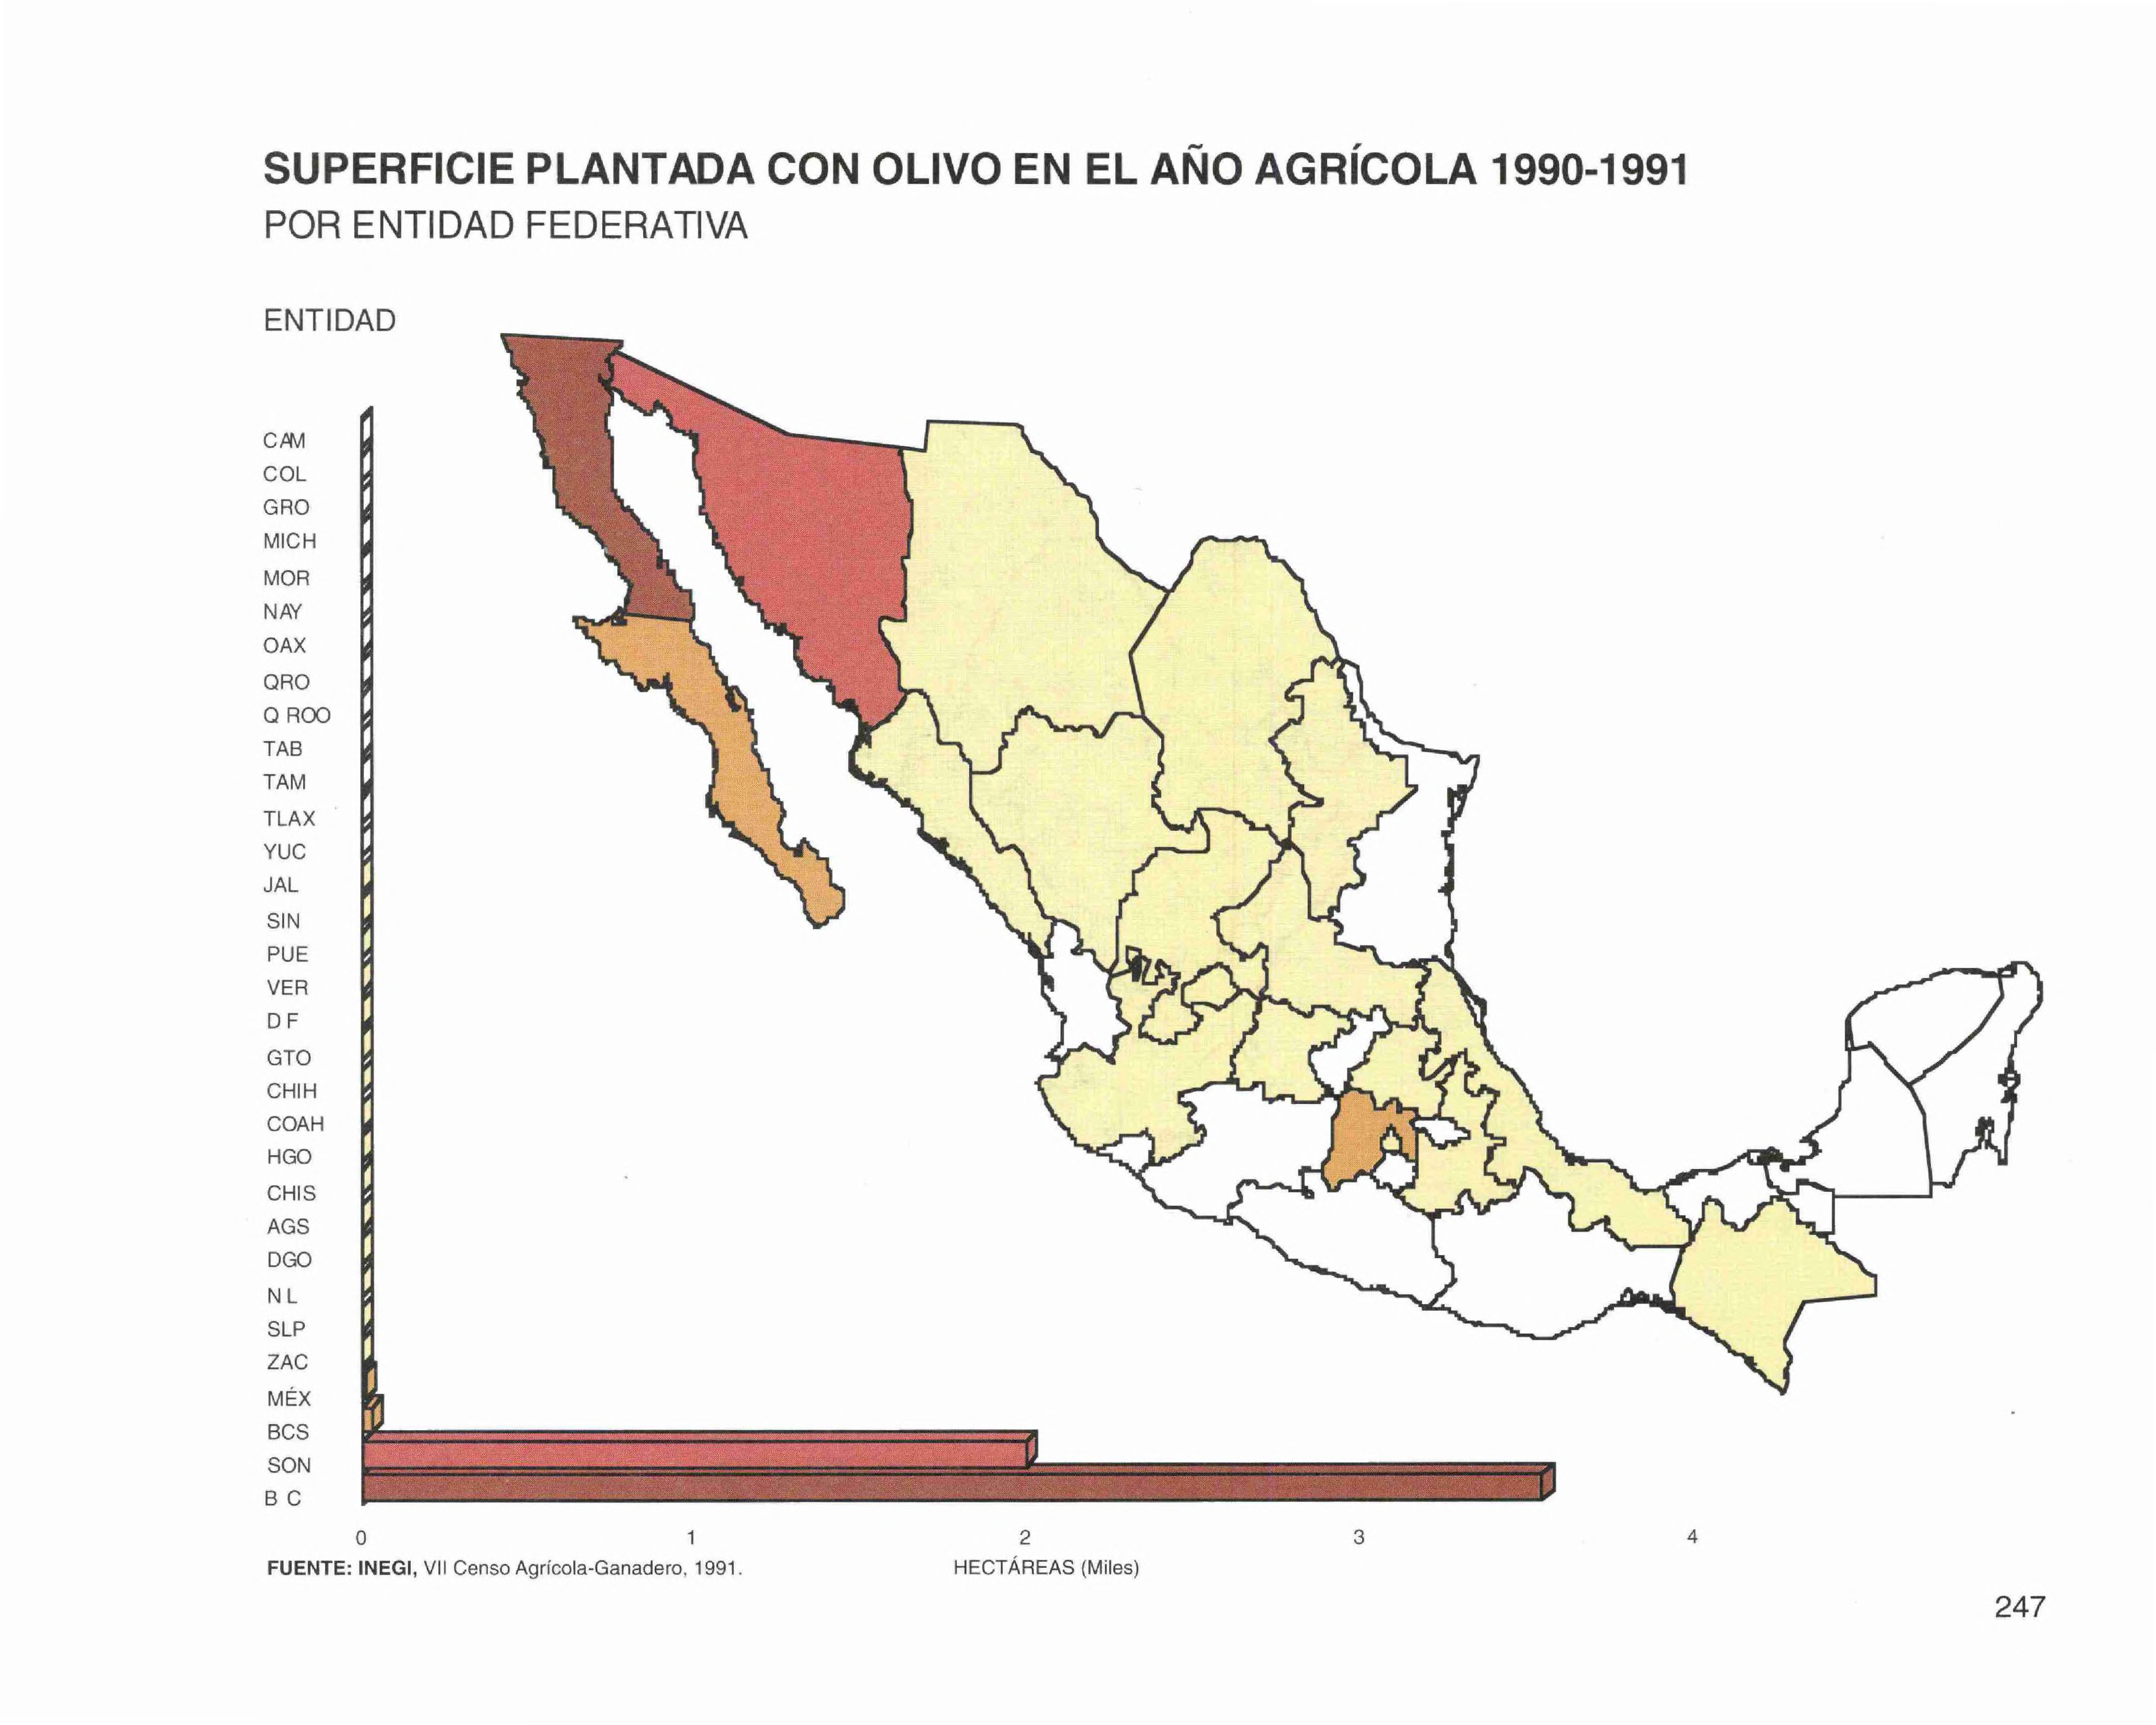 SUPERFICIE PLANTADA CON OLIVO EN EL AÑO AGRÍCOLA 1990-1991 POR ENTIDAD